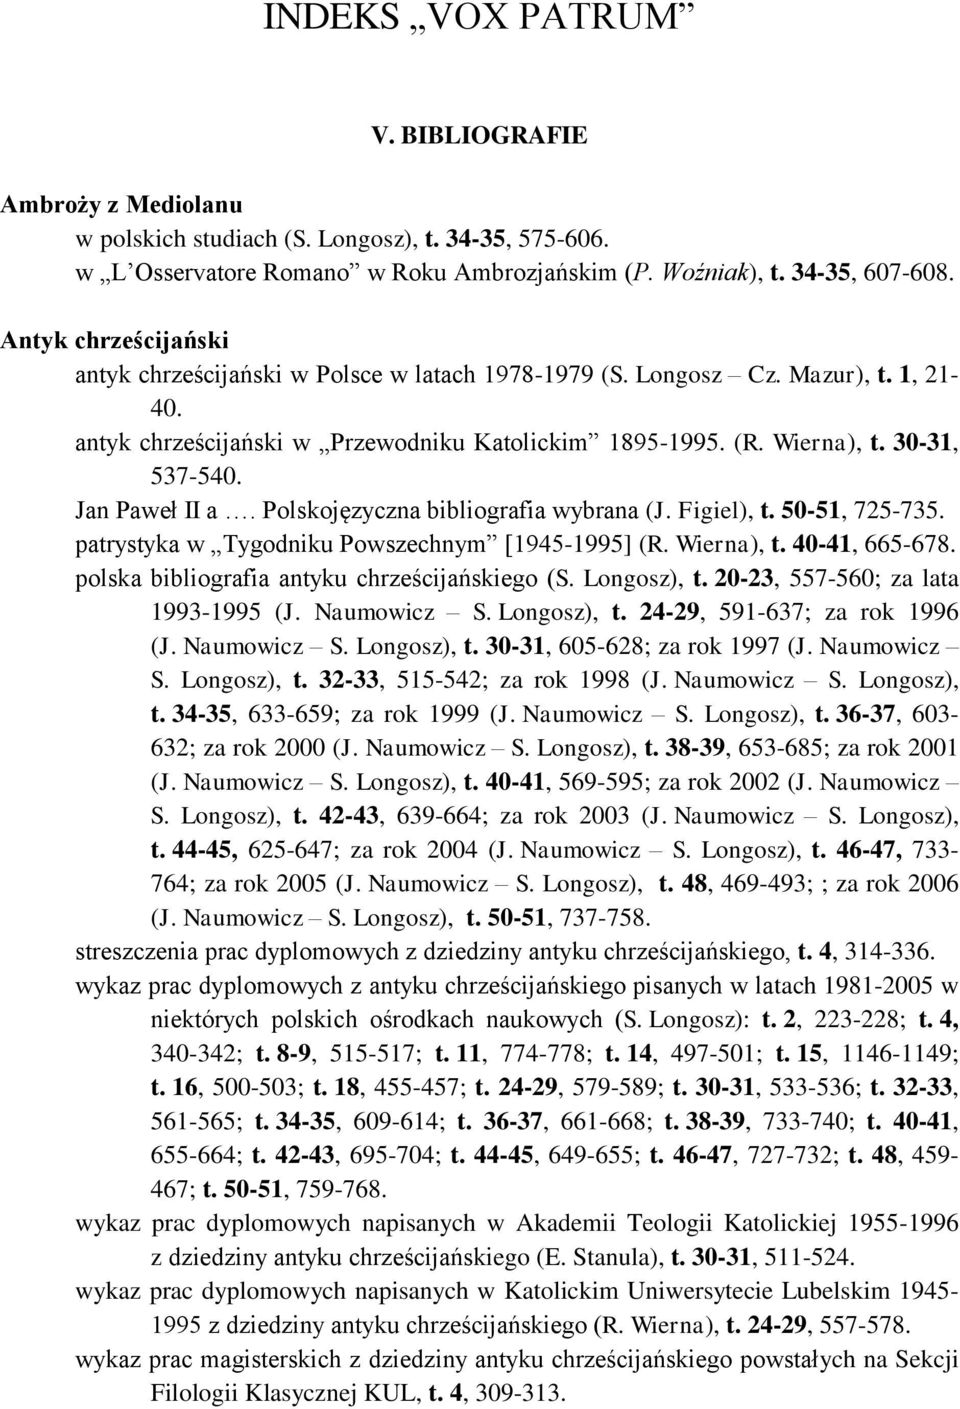 Jan Paweł II a. Polskojęzyczna bibliografia wybrana (J. Figiel), t. 50-51, 725-735. patrystyka w Tygodniku Powszechnym [1945-1995] (R. Wierna), t. 40-41, 665-678.